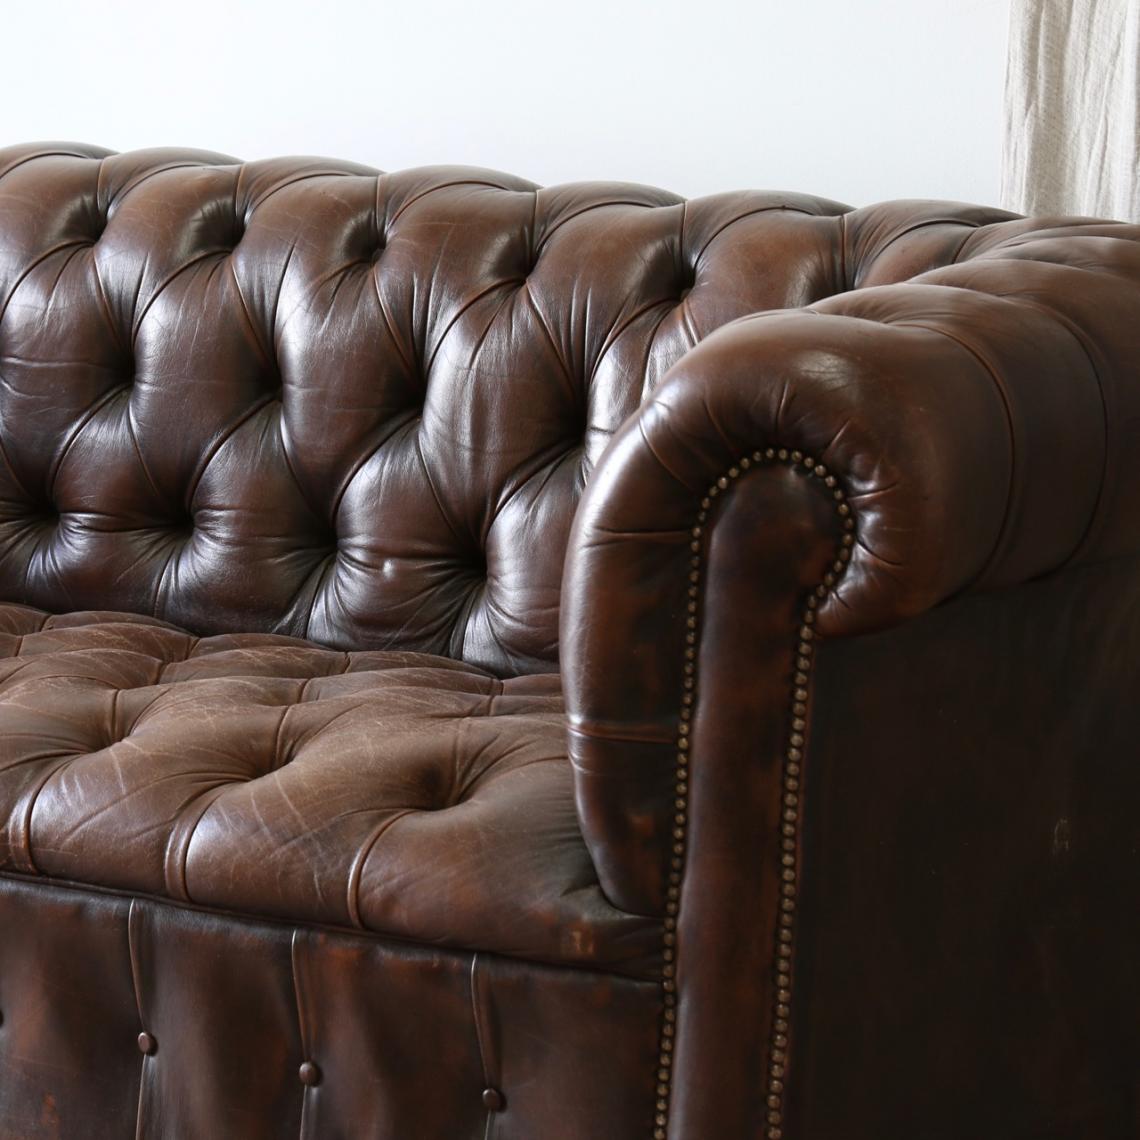 切斯特菲尔德老式皮革长沙发椅